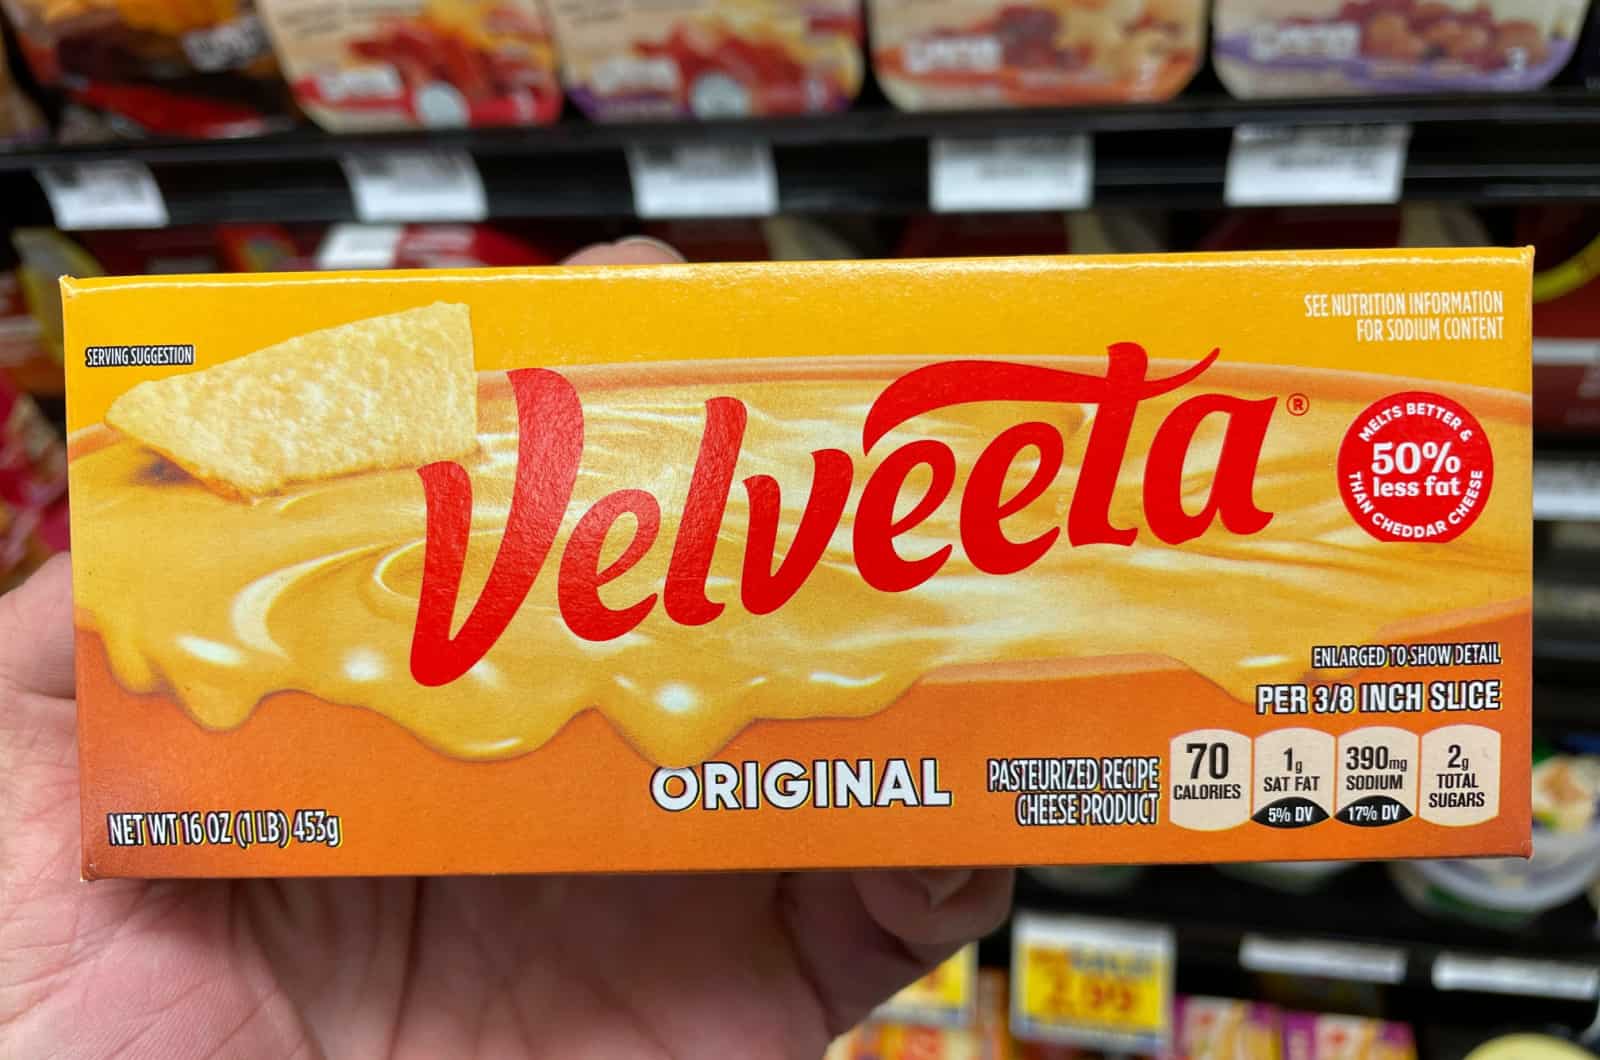 velveeta cheese packaging